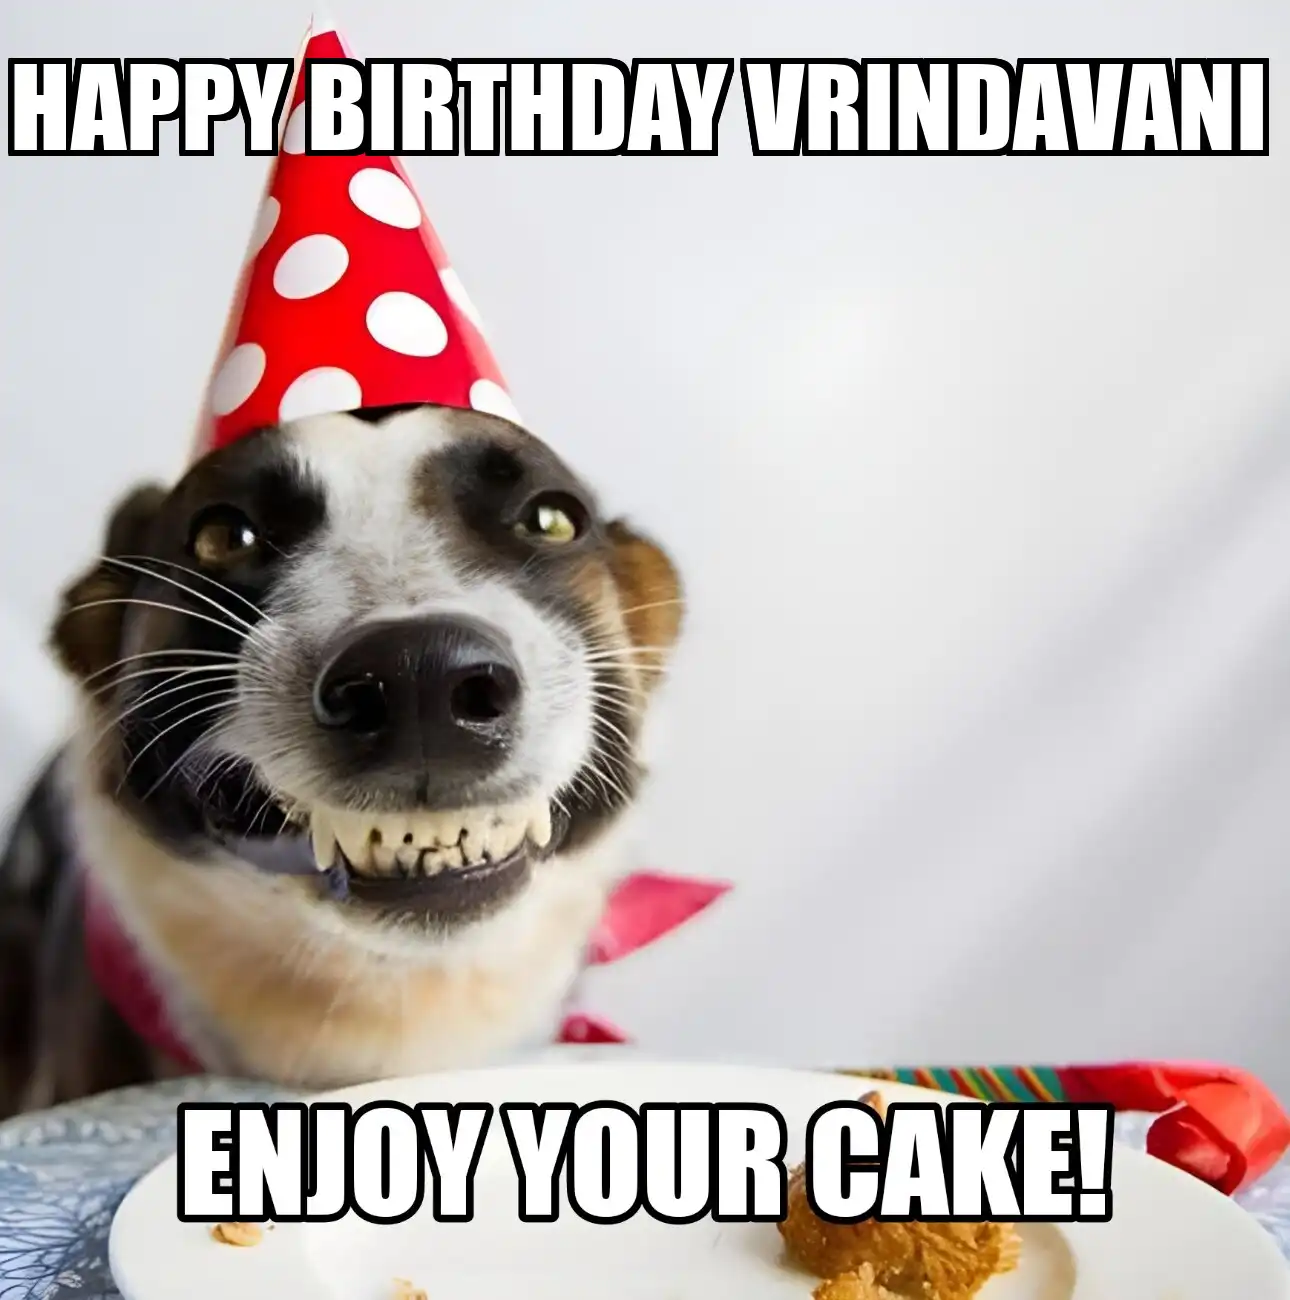 Happy Birthday Vrindavani Enjoy Your Cake Dog Meme